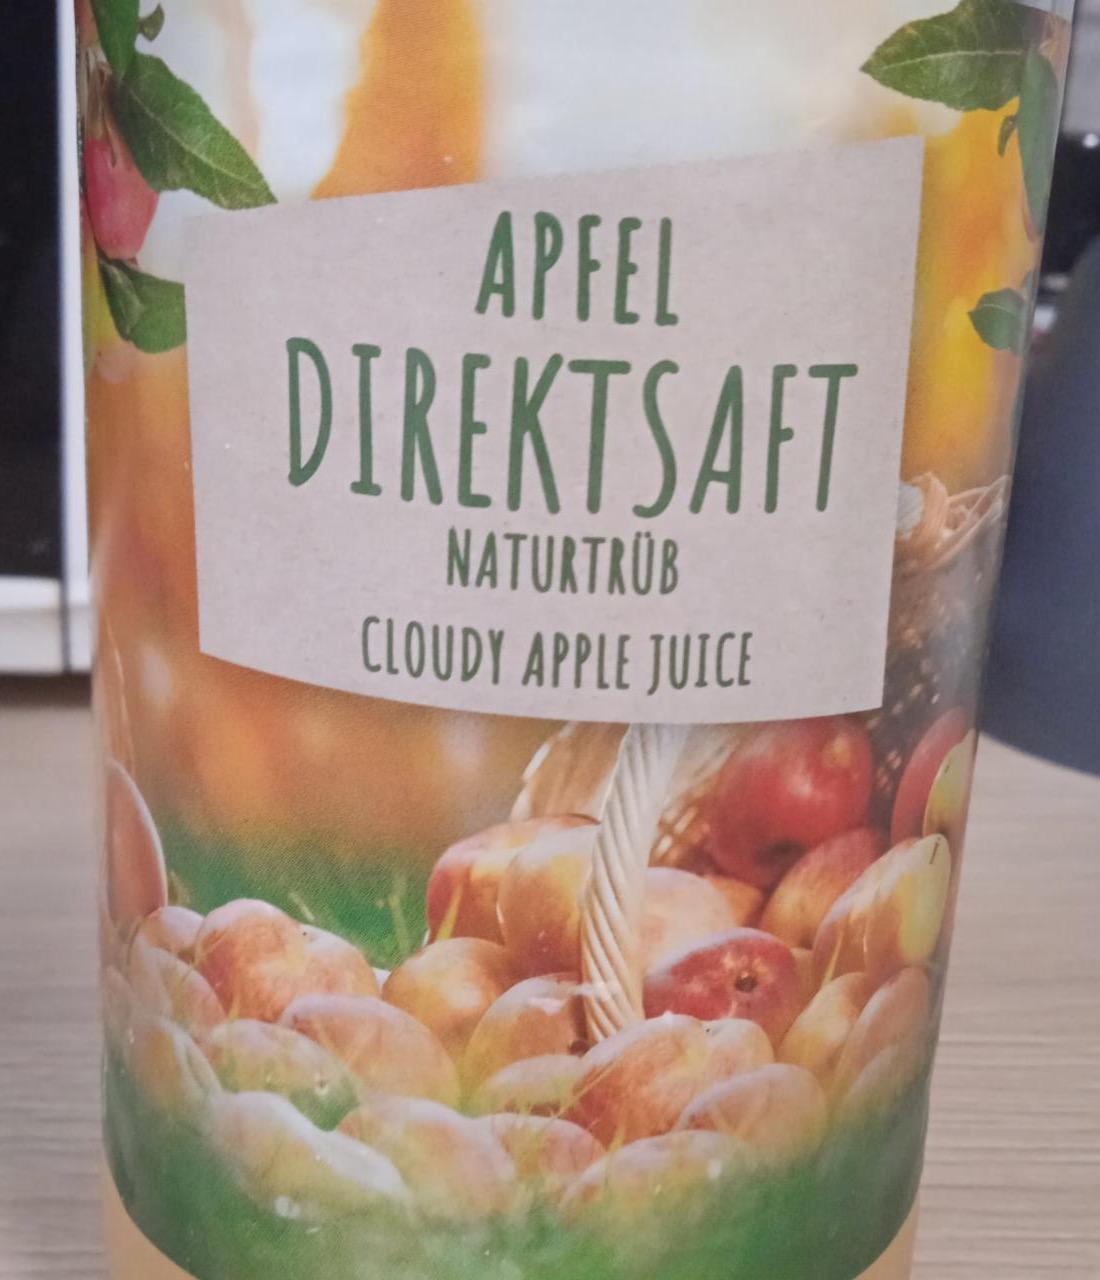 Képek - Apfel direktsaft naturtrüb cloudy apple juice